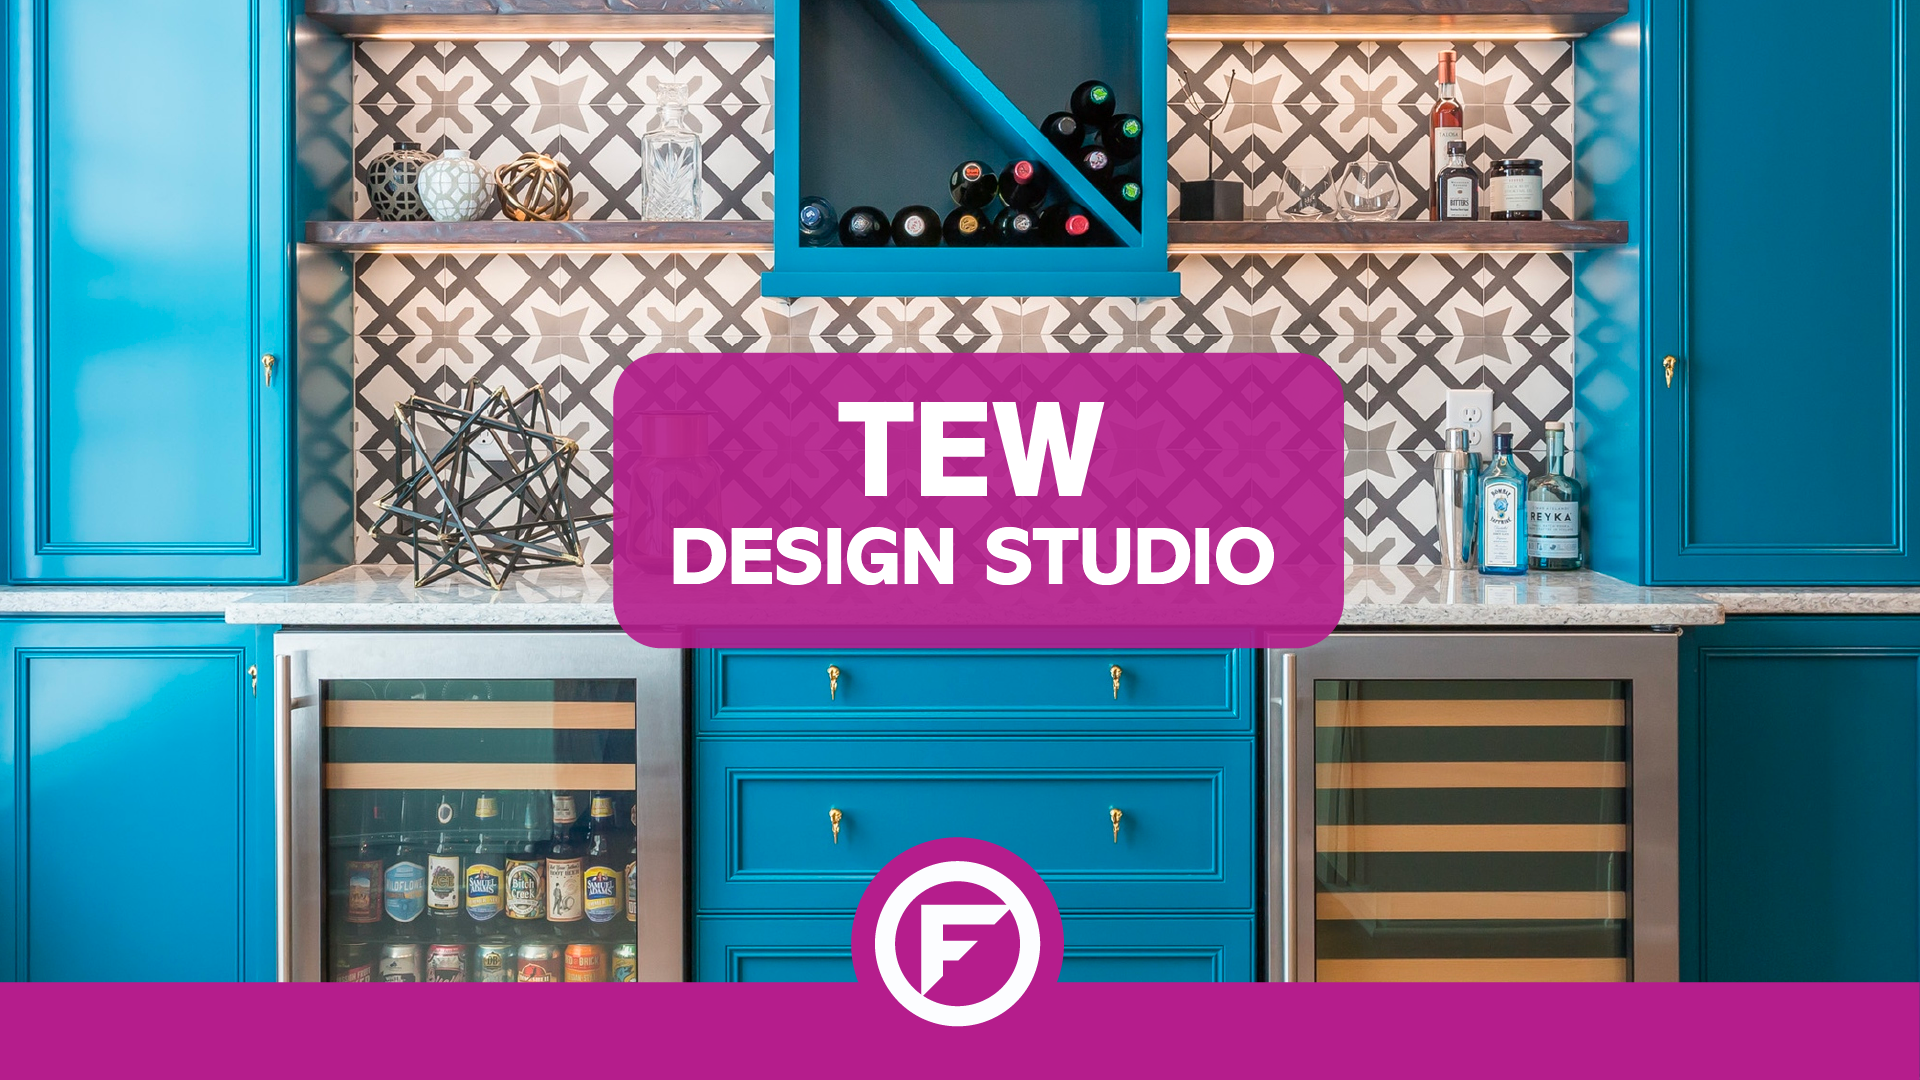 TEW Design Studio Boutique Interior Design - Floorily